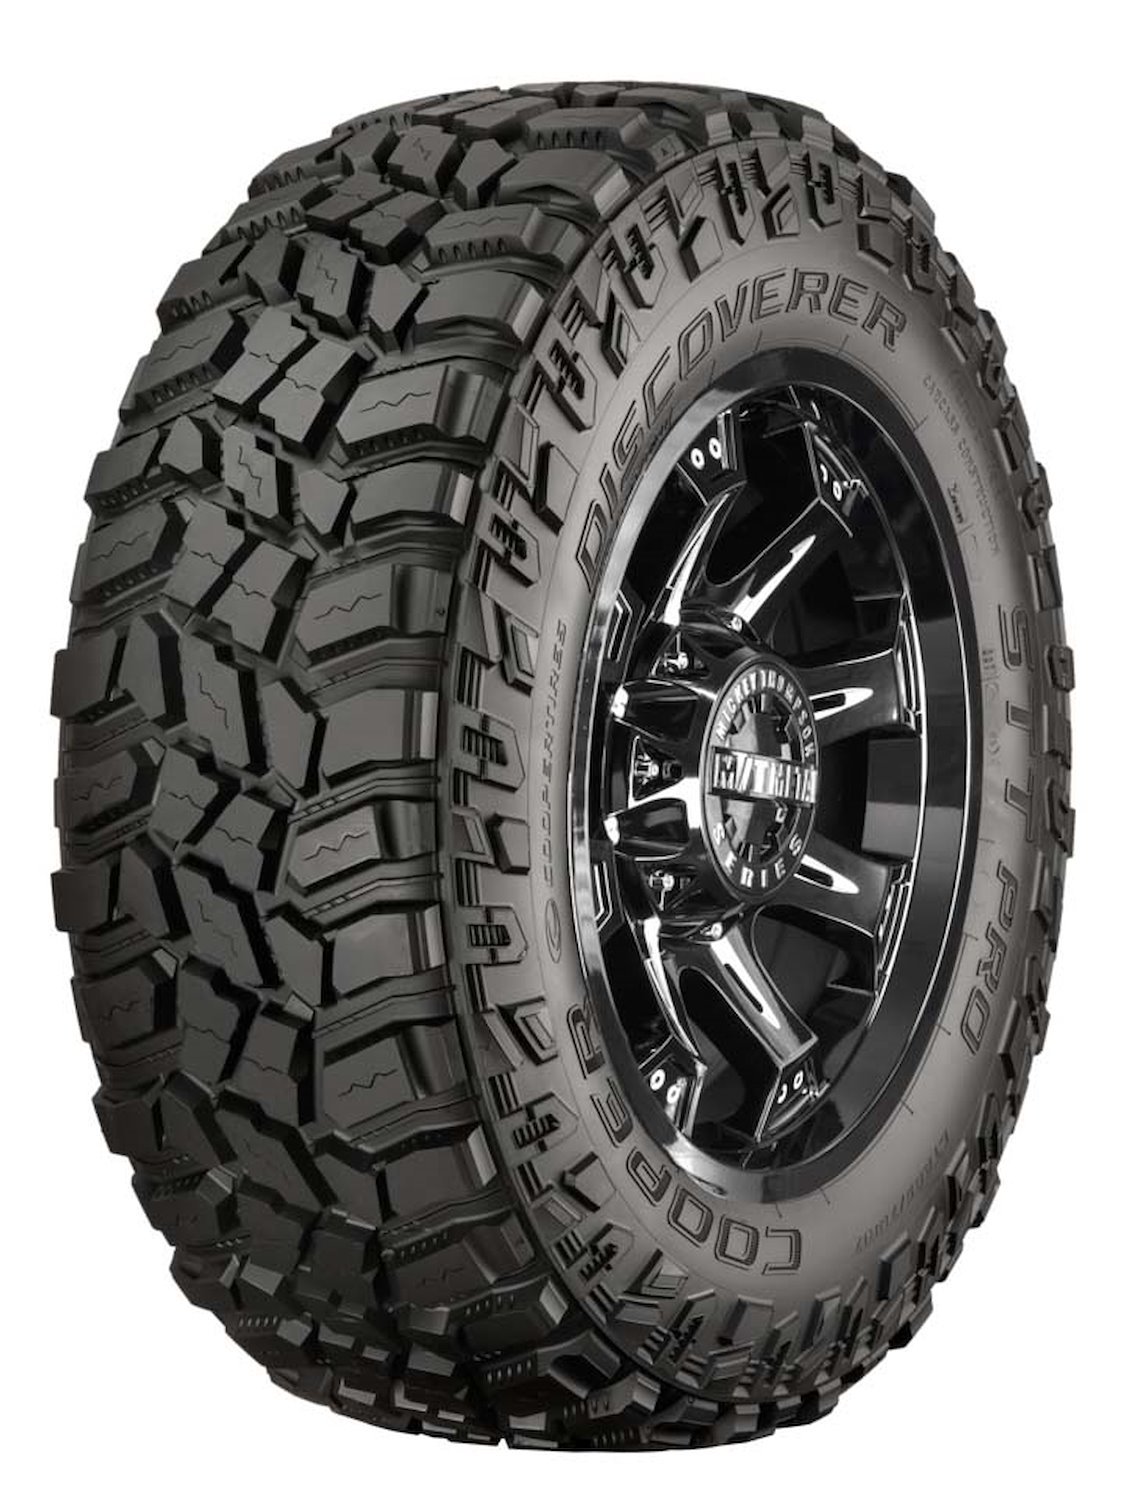 Discoverer STT PRO All-Terrain Tire, 38X15.50R20LT